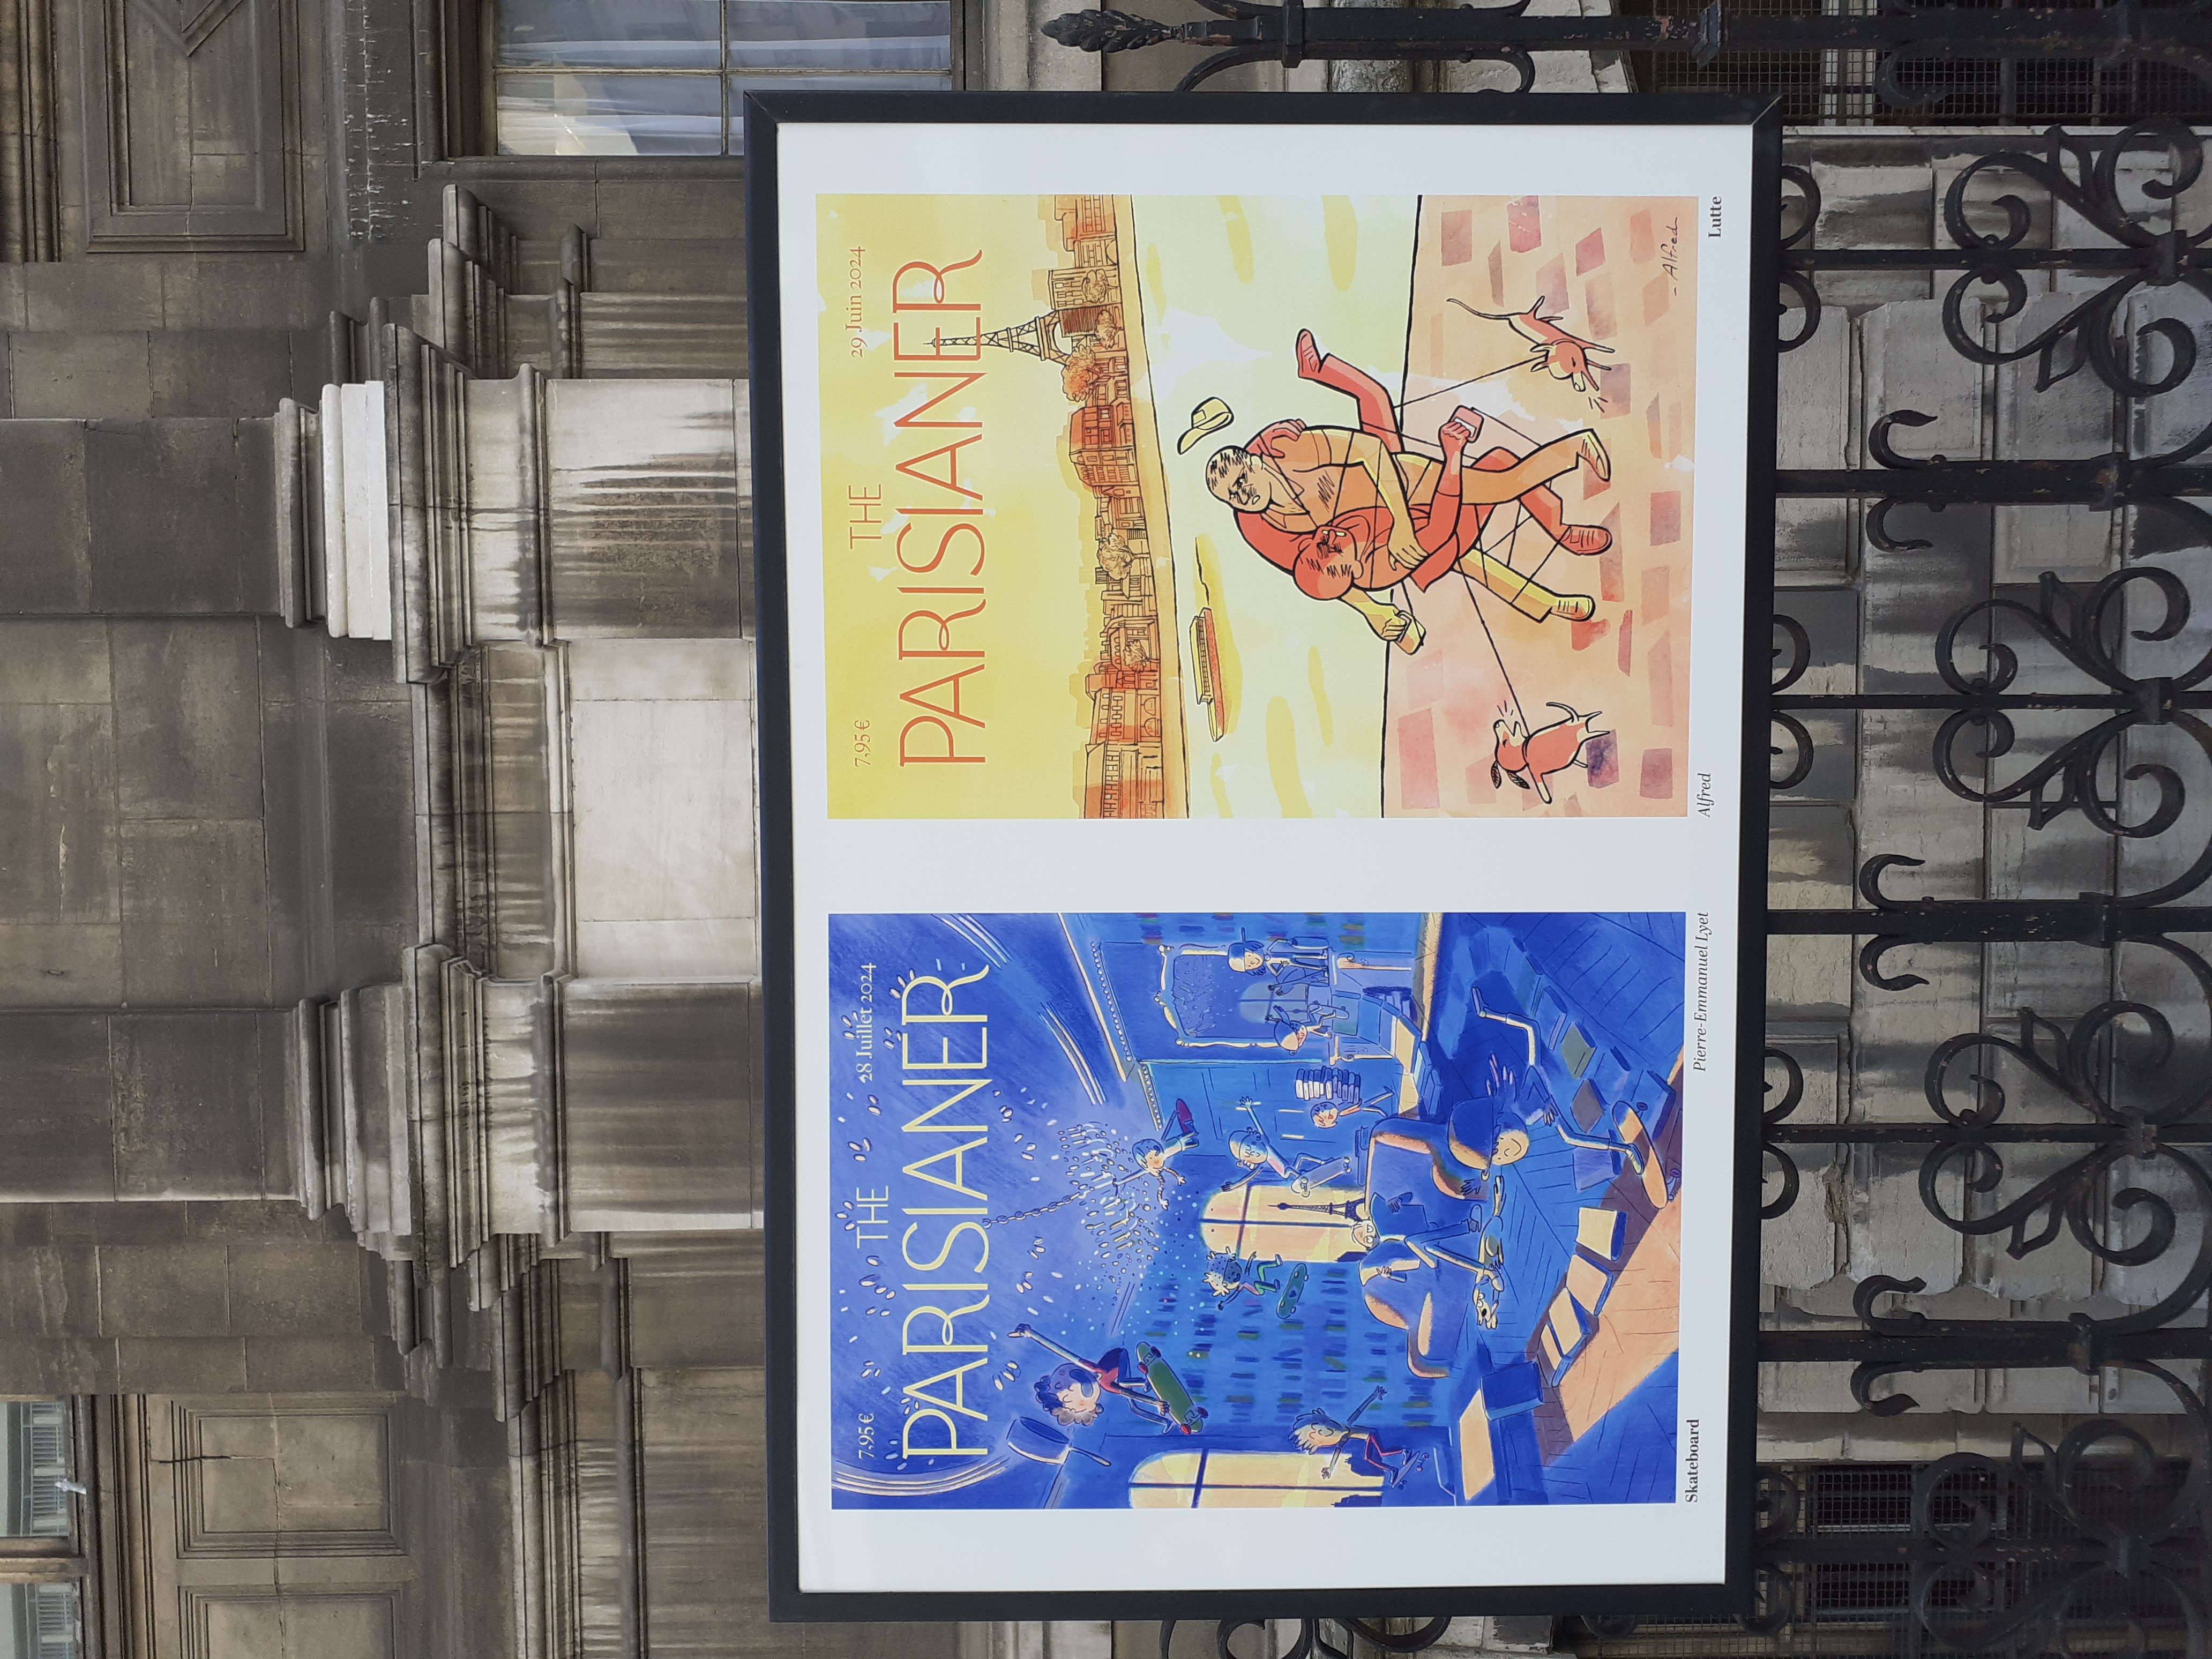 The Parisianer Exhibitian poster